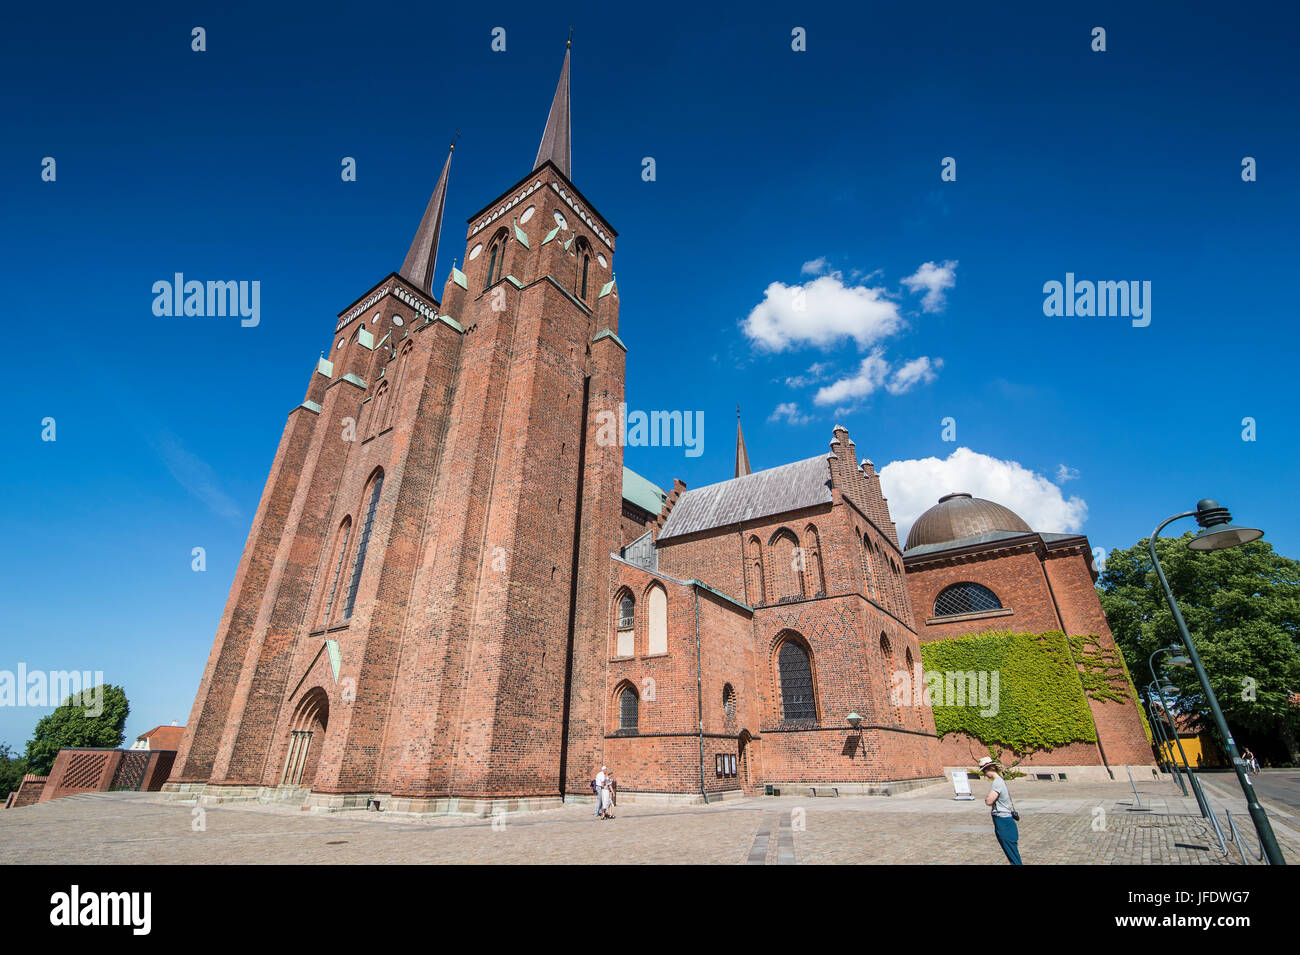 Vista del patrimonio mundial de la Unesco la Catedral de Roskilde, Dinamarca Foto de stock